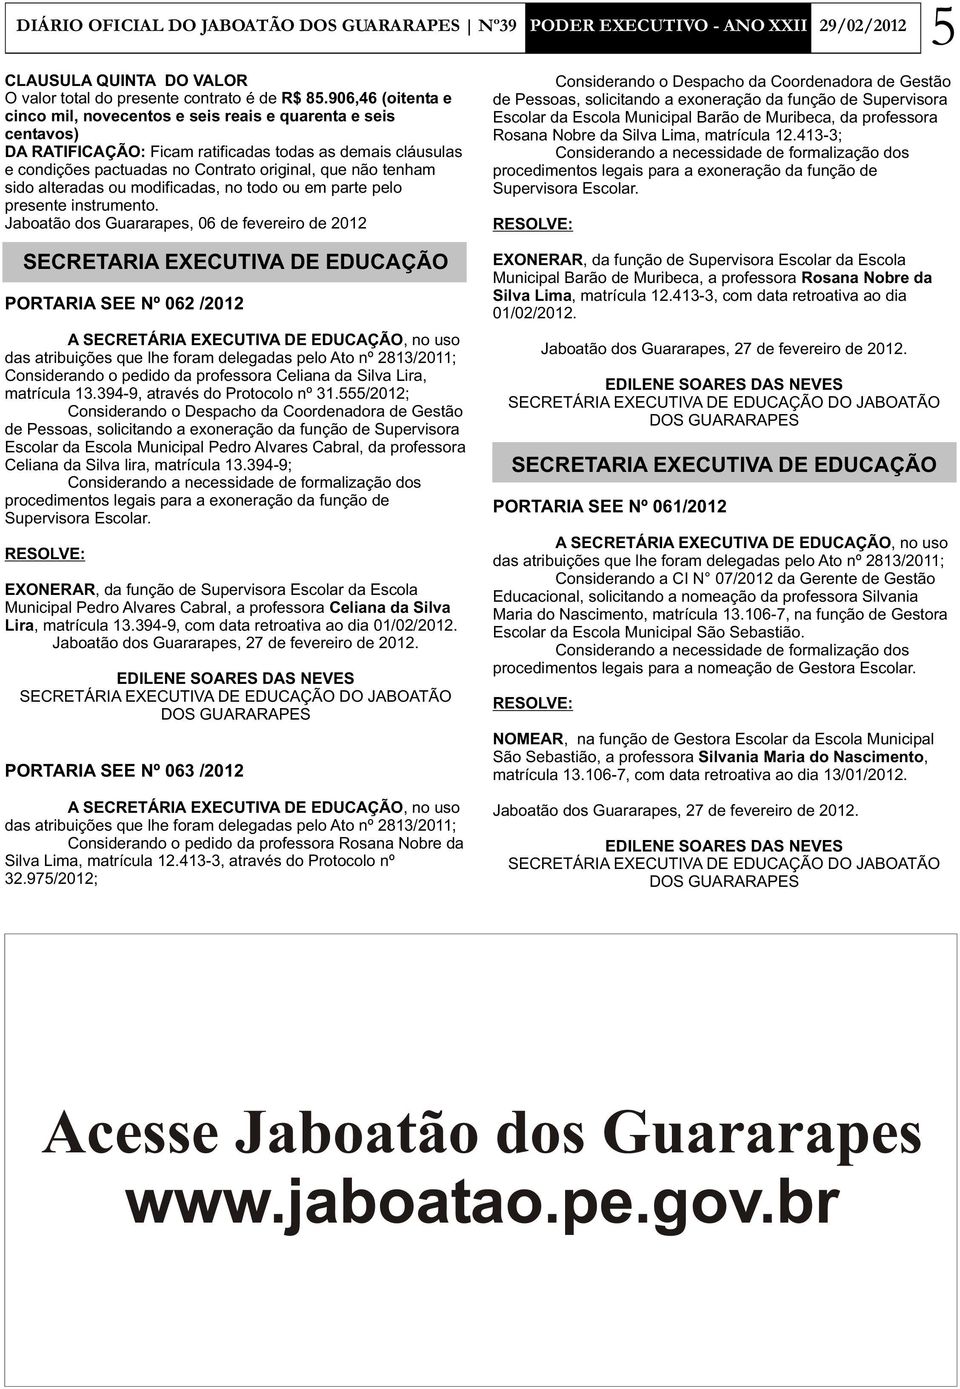 Jaboatão dos Guararapes, 06 de fevereiro de 2012 PORTARIA SEE Nº 062 /2012 Considerando o pedido da professora Celiana da Silva Lira, matrícula 13.394-9, através do Protocolo nº 31.